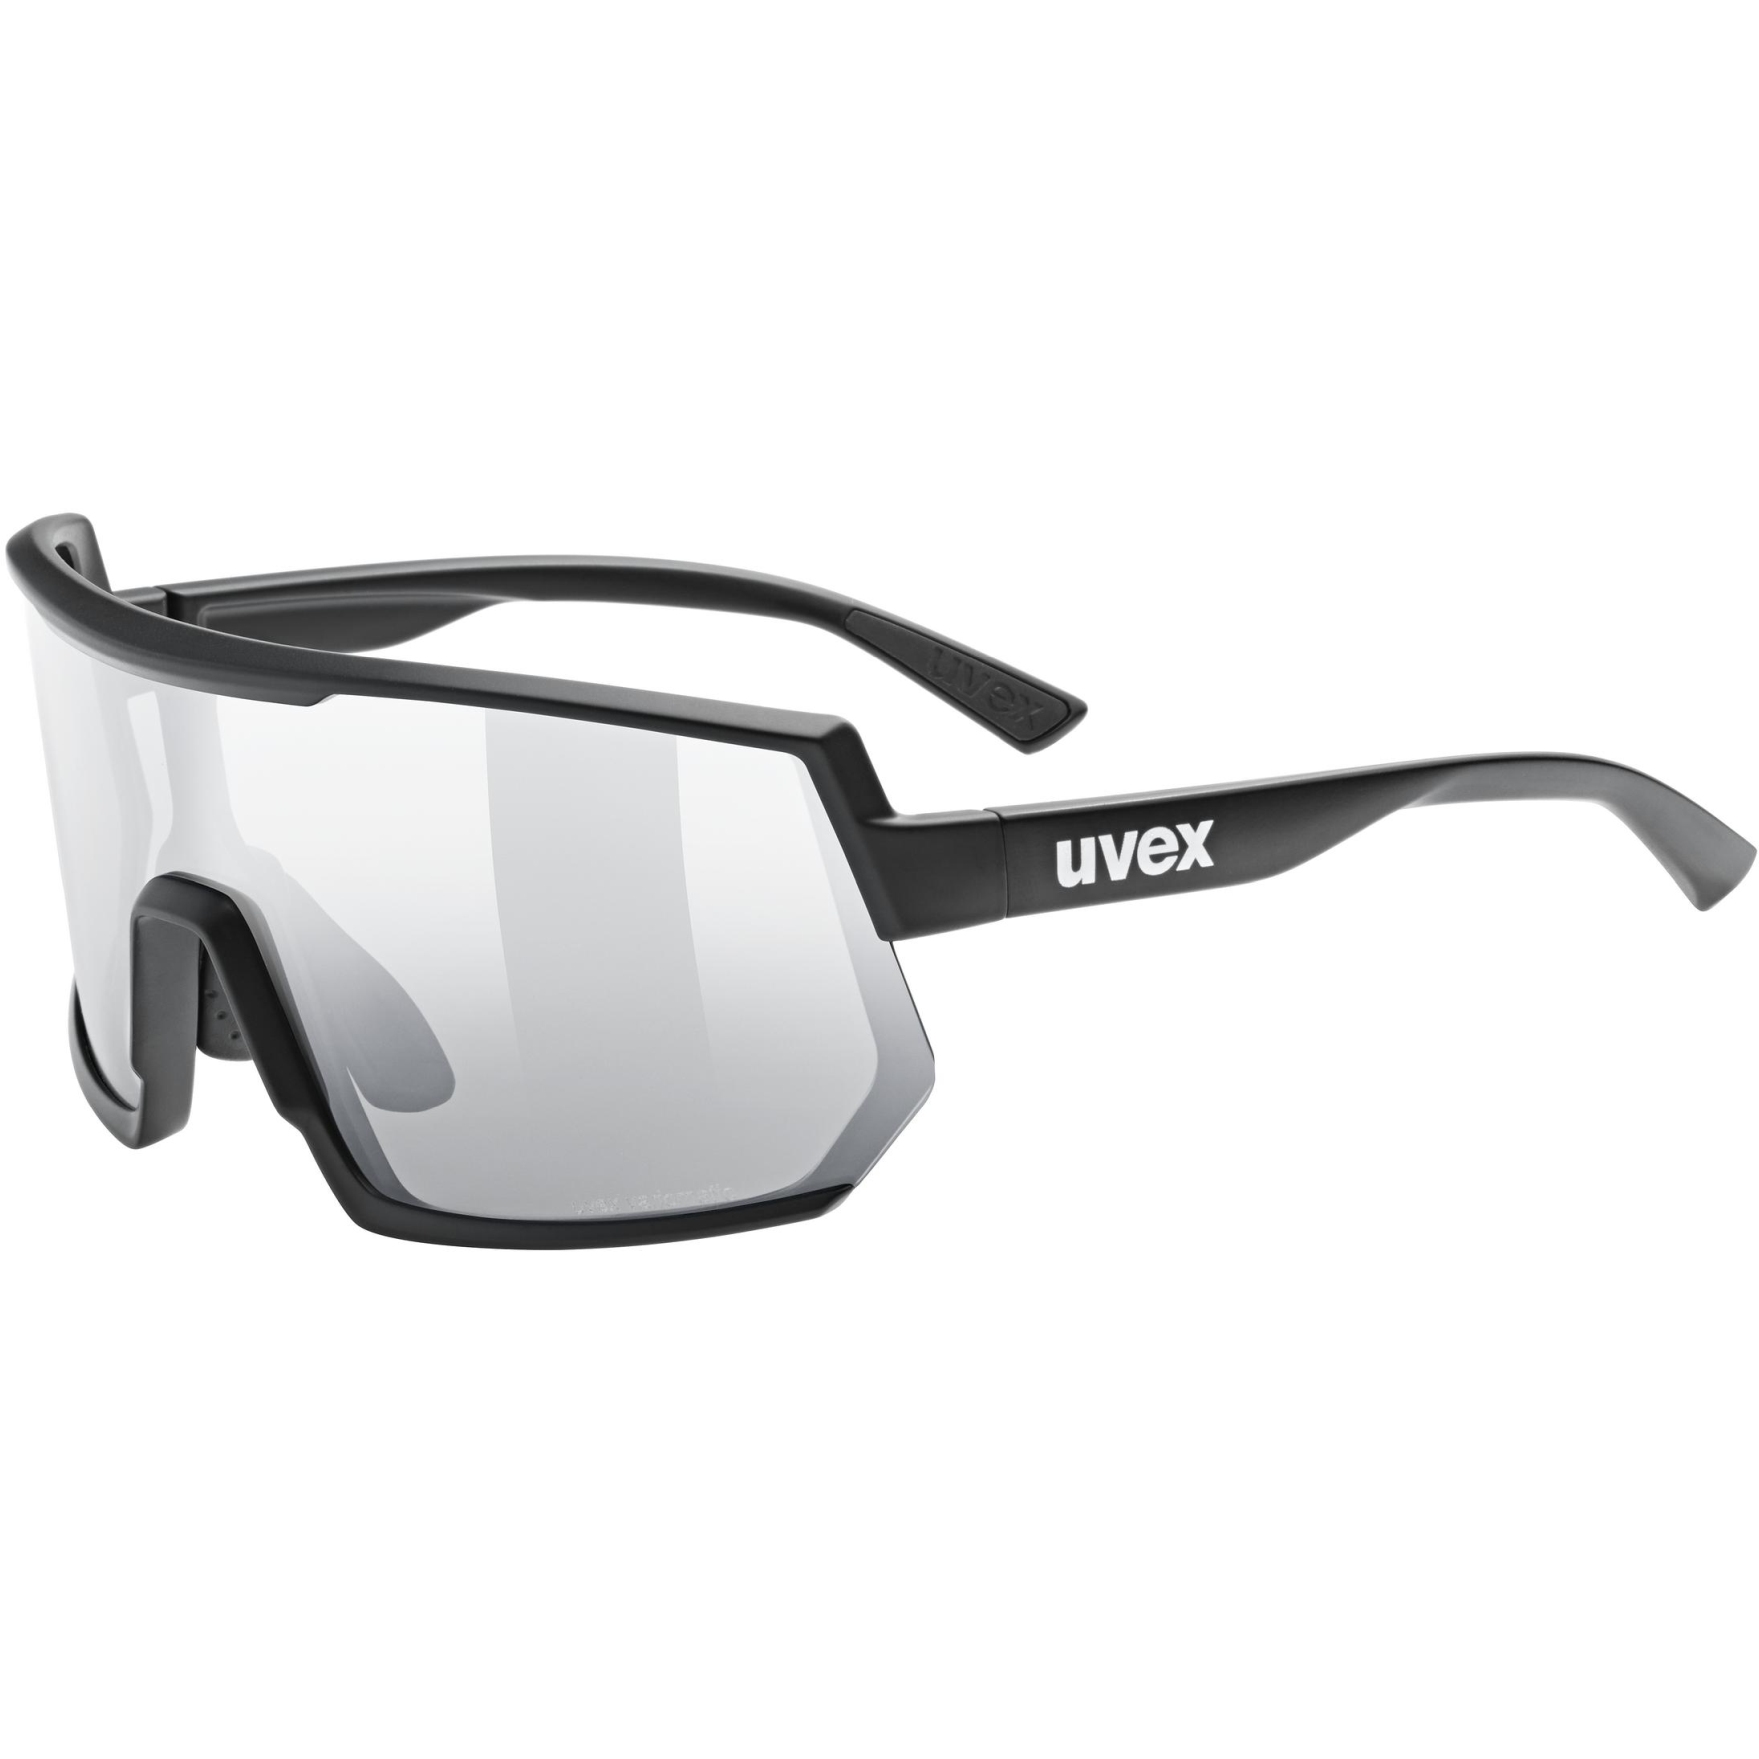 Produktbild von Uvex sportstyle 235 V Brille - black matt/variomatic litemirror silver